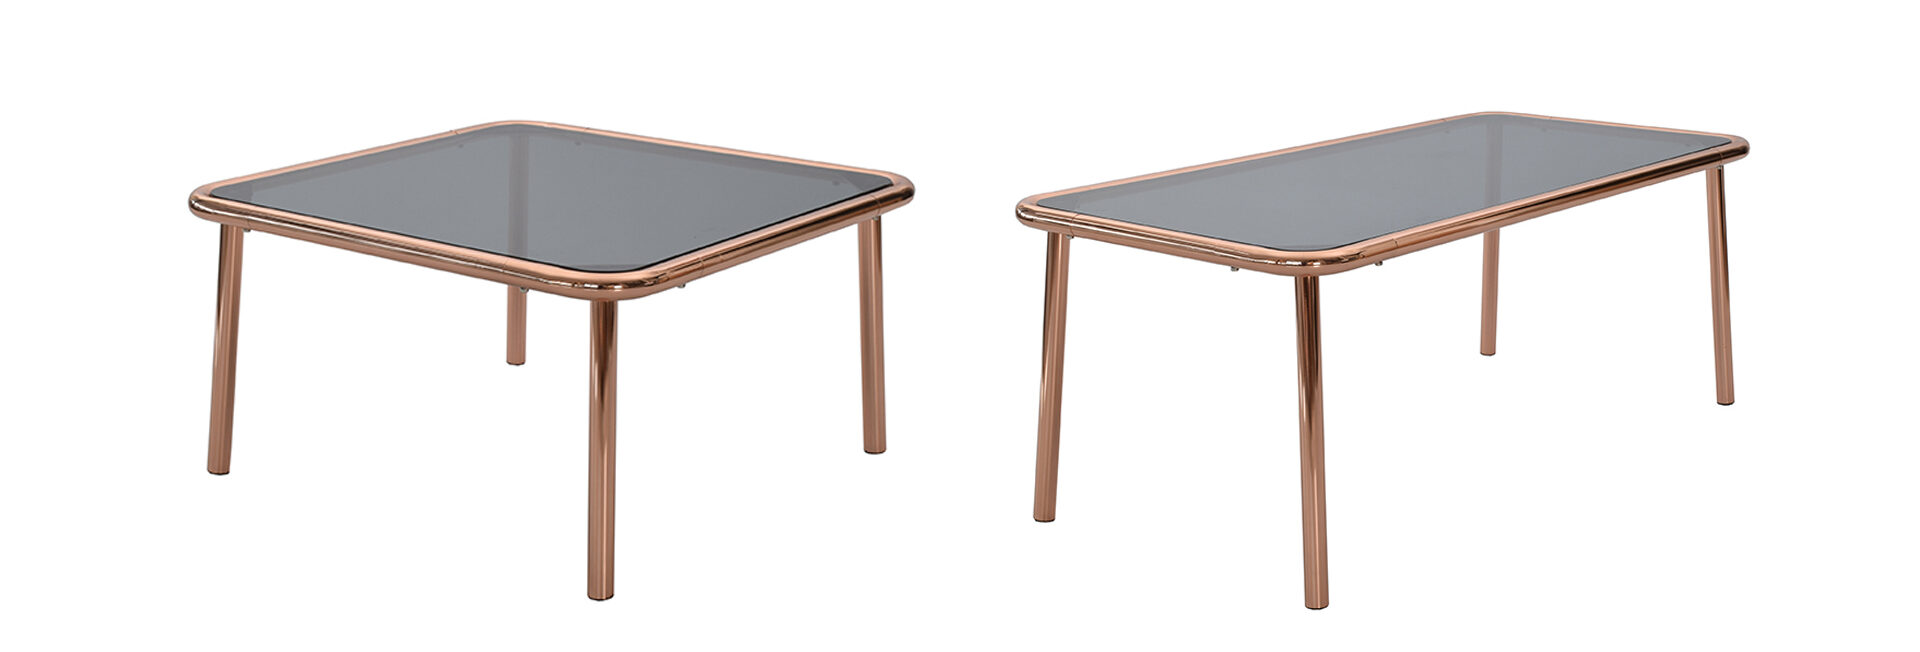 Basic soffbord - Rektangulärt + Kvadratiskt - Rökfärgat glas - Kopparfärgade ben